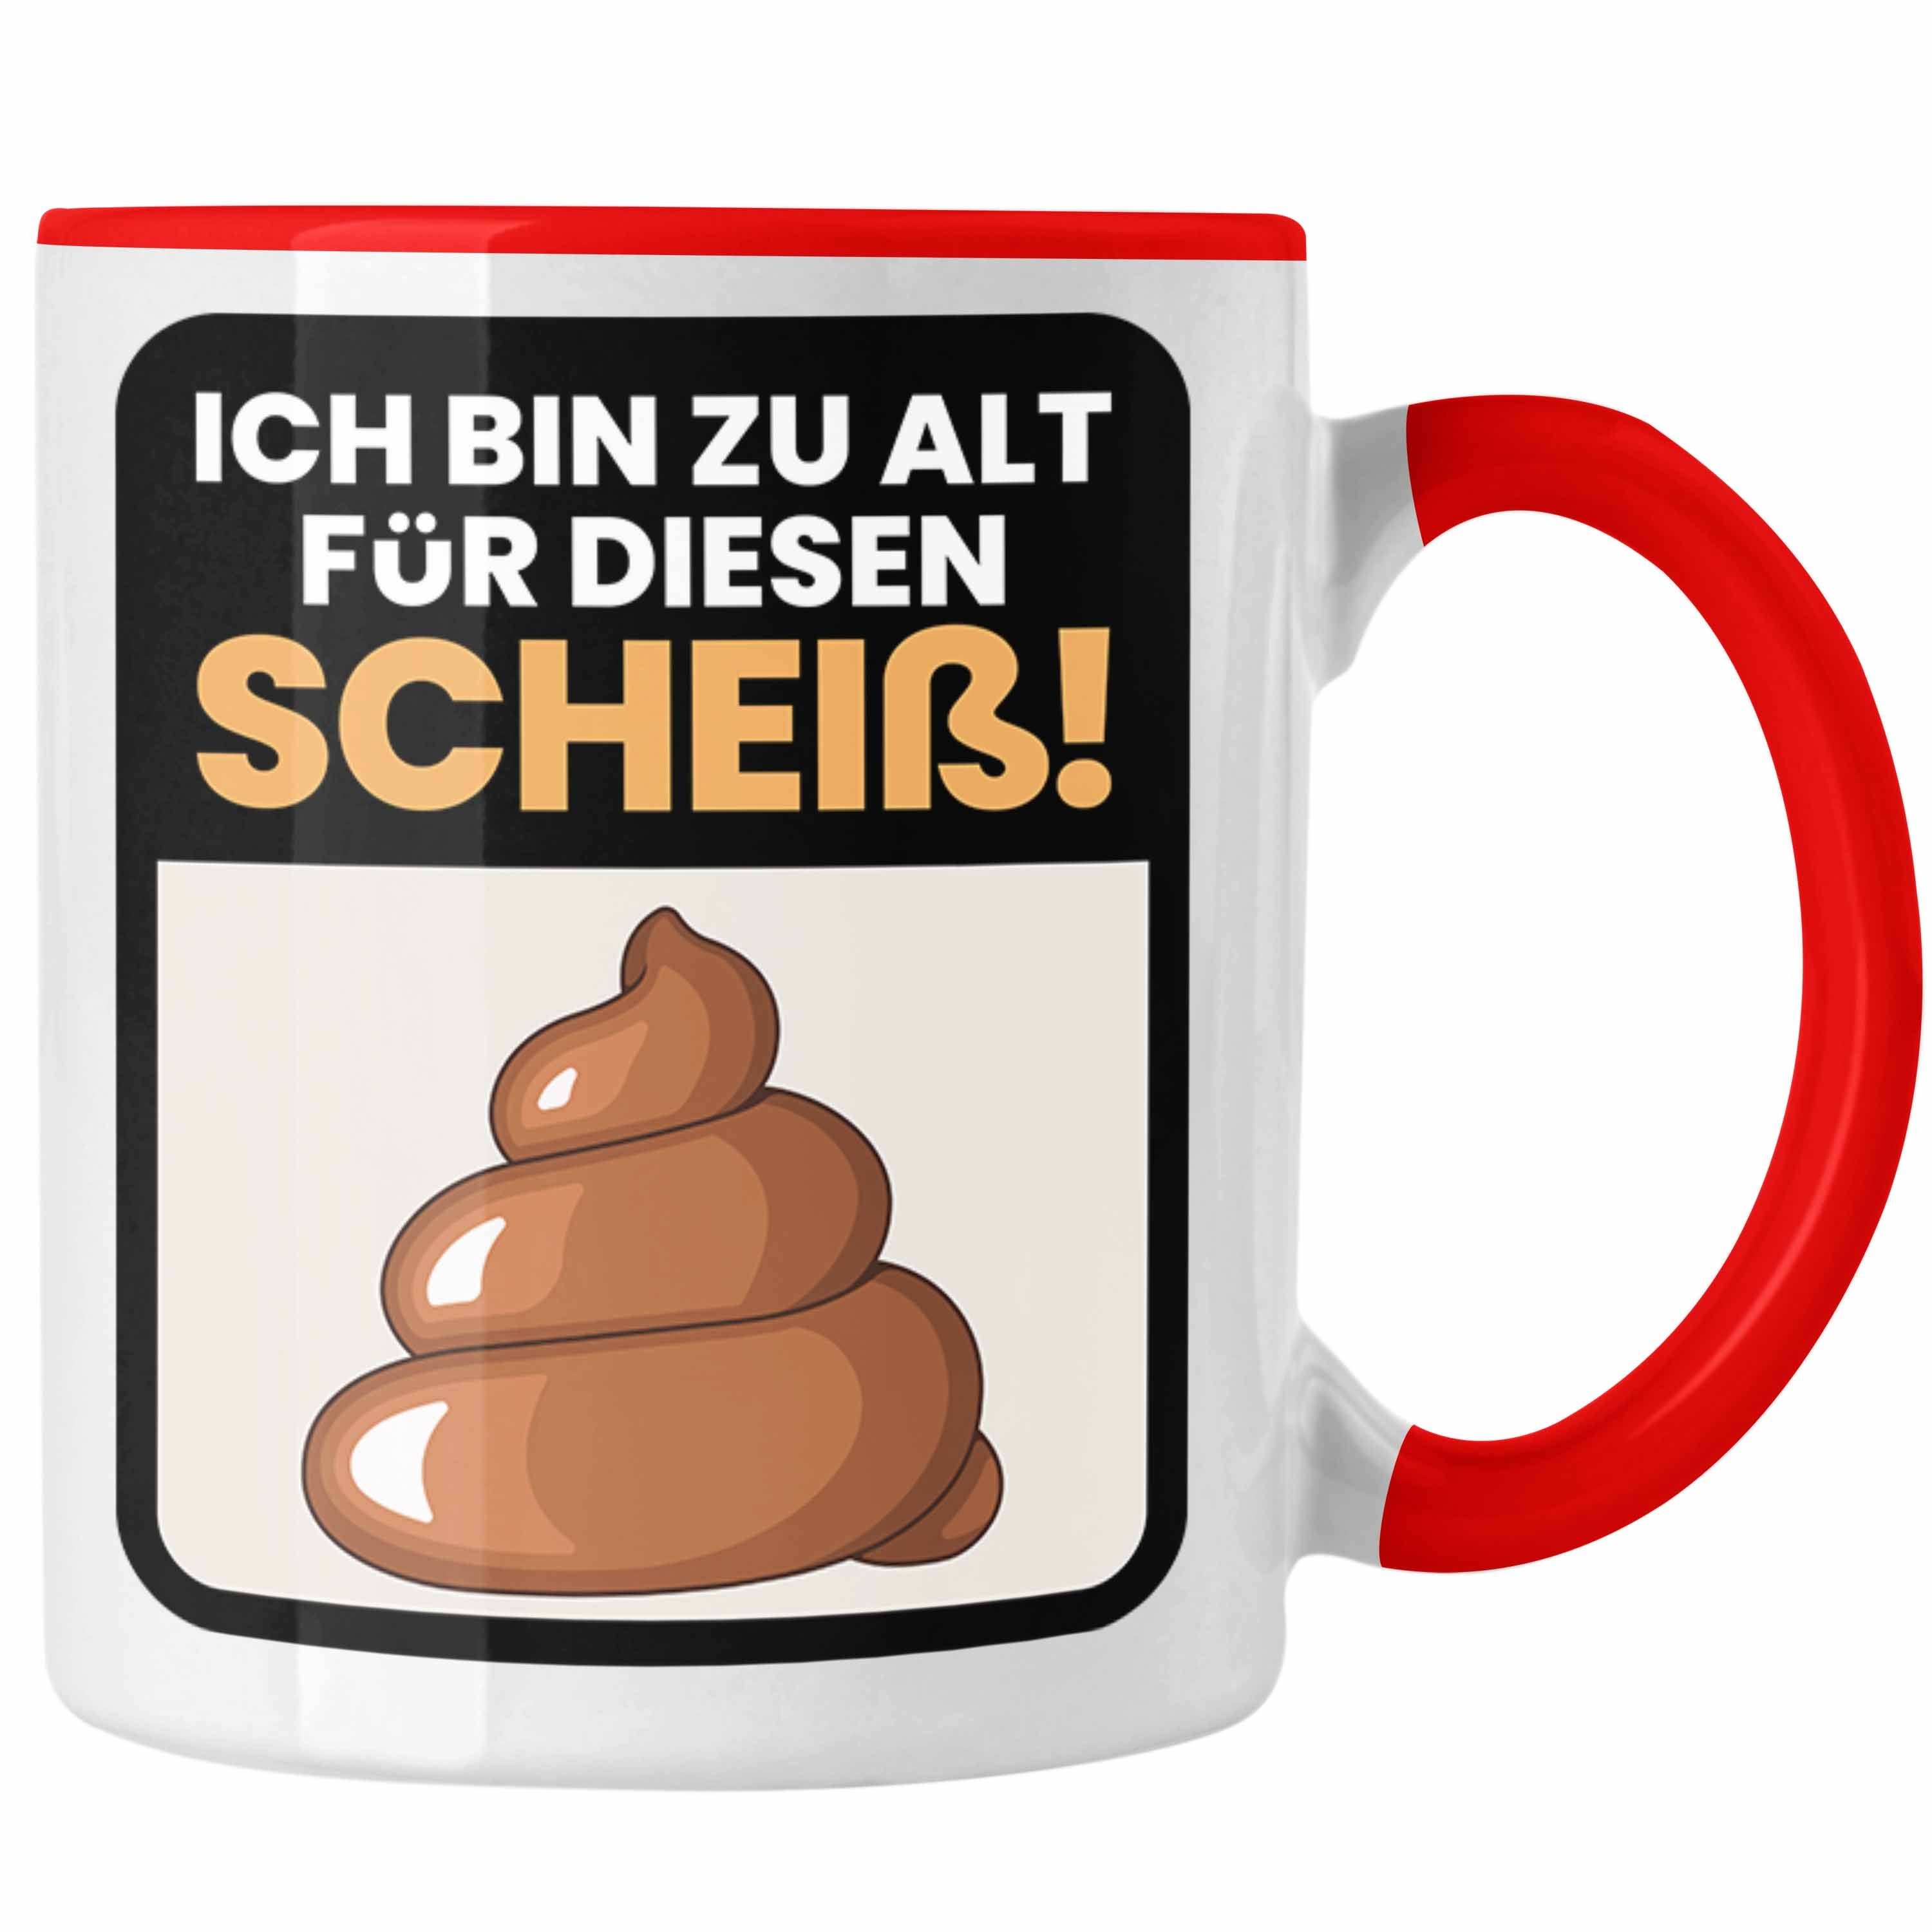 Trendation Tasse Lustiger Spruch Kaffee-Becher Tasse Ich Bin Zu Als Für Diesen Sch**** Rot